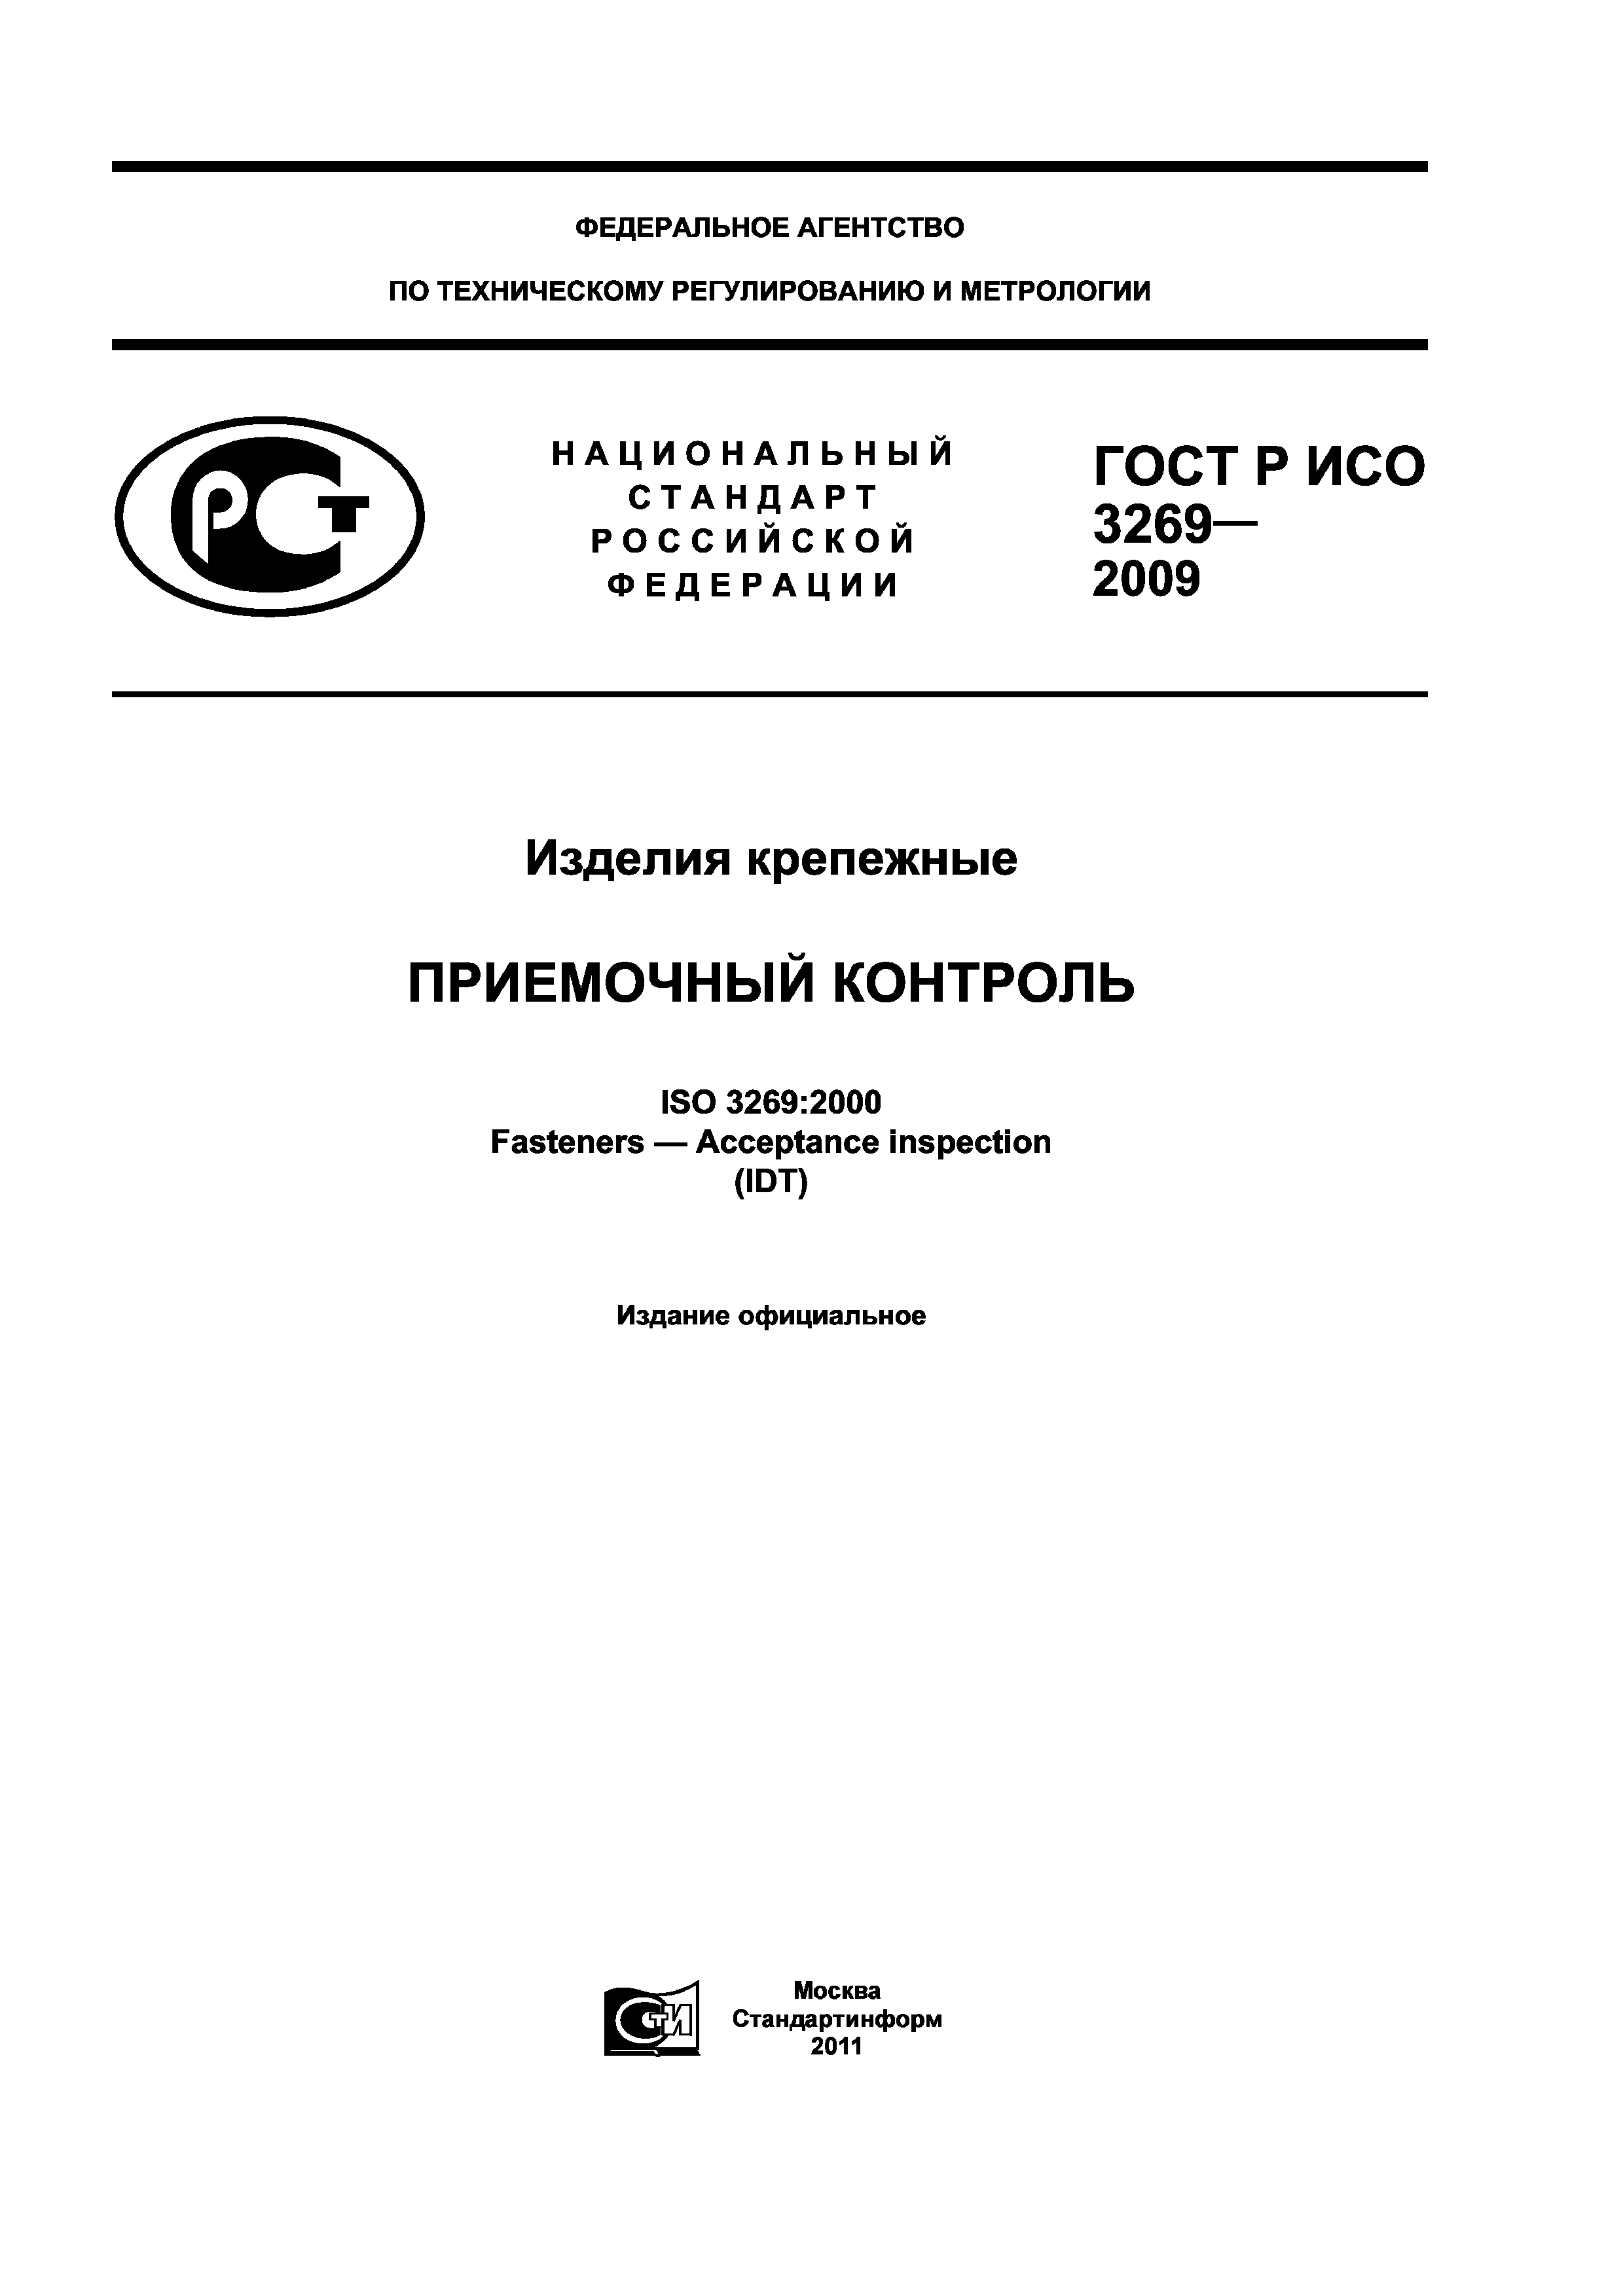 ГОСТ Р ИСО 3269-2009